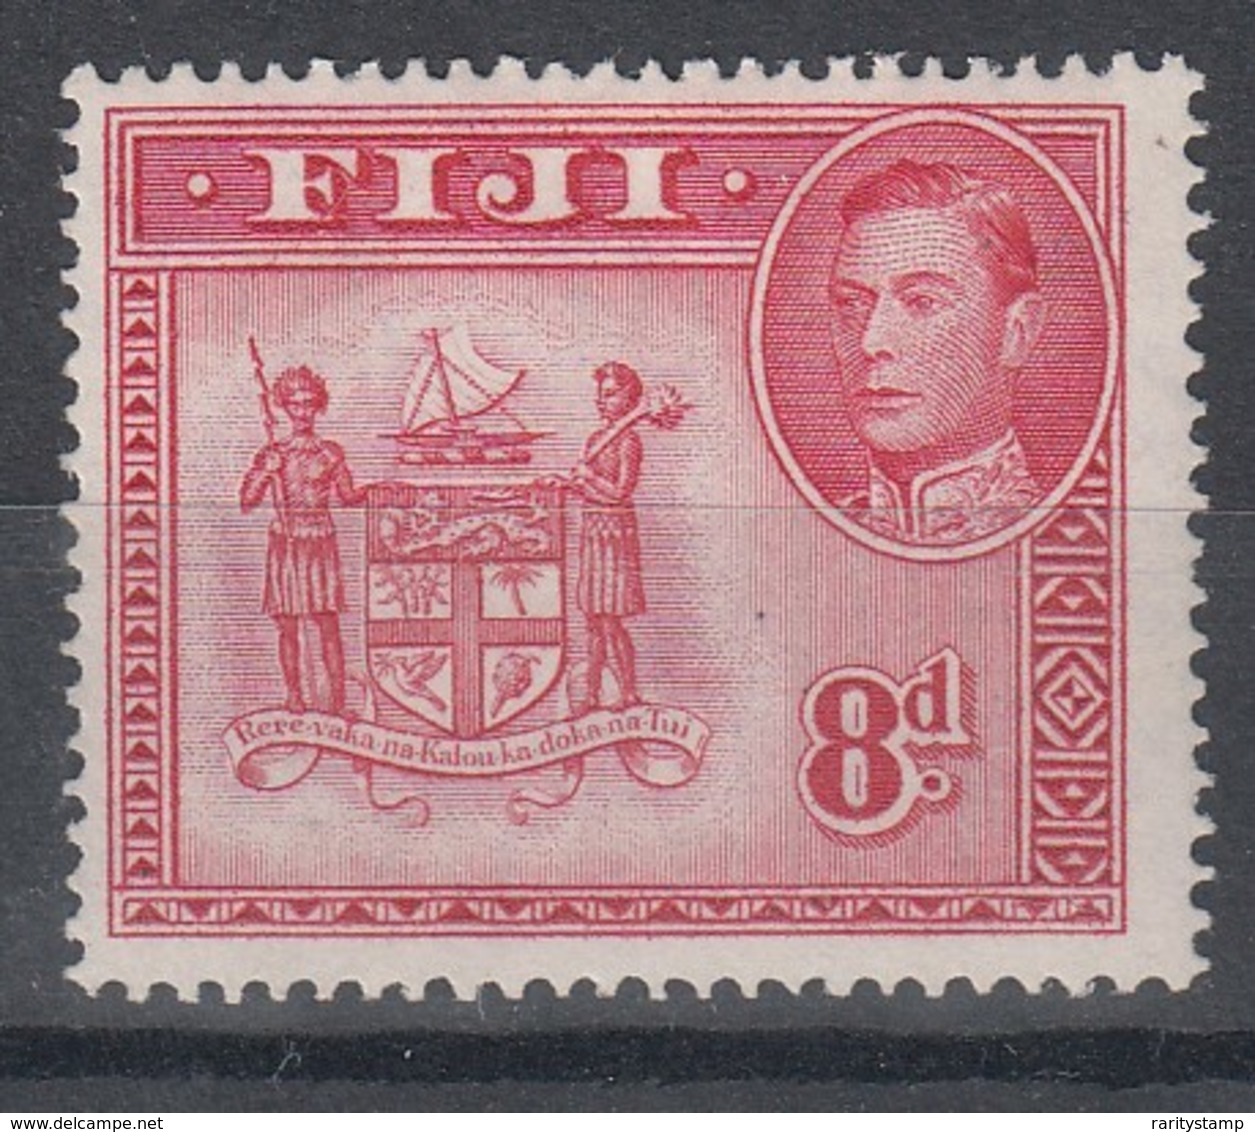 FIJI 1938 8d CARMINE MLH SG 261c - Fiji (...-1970)